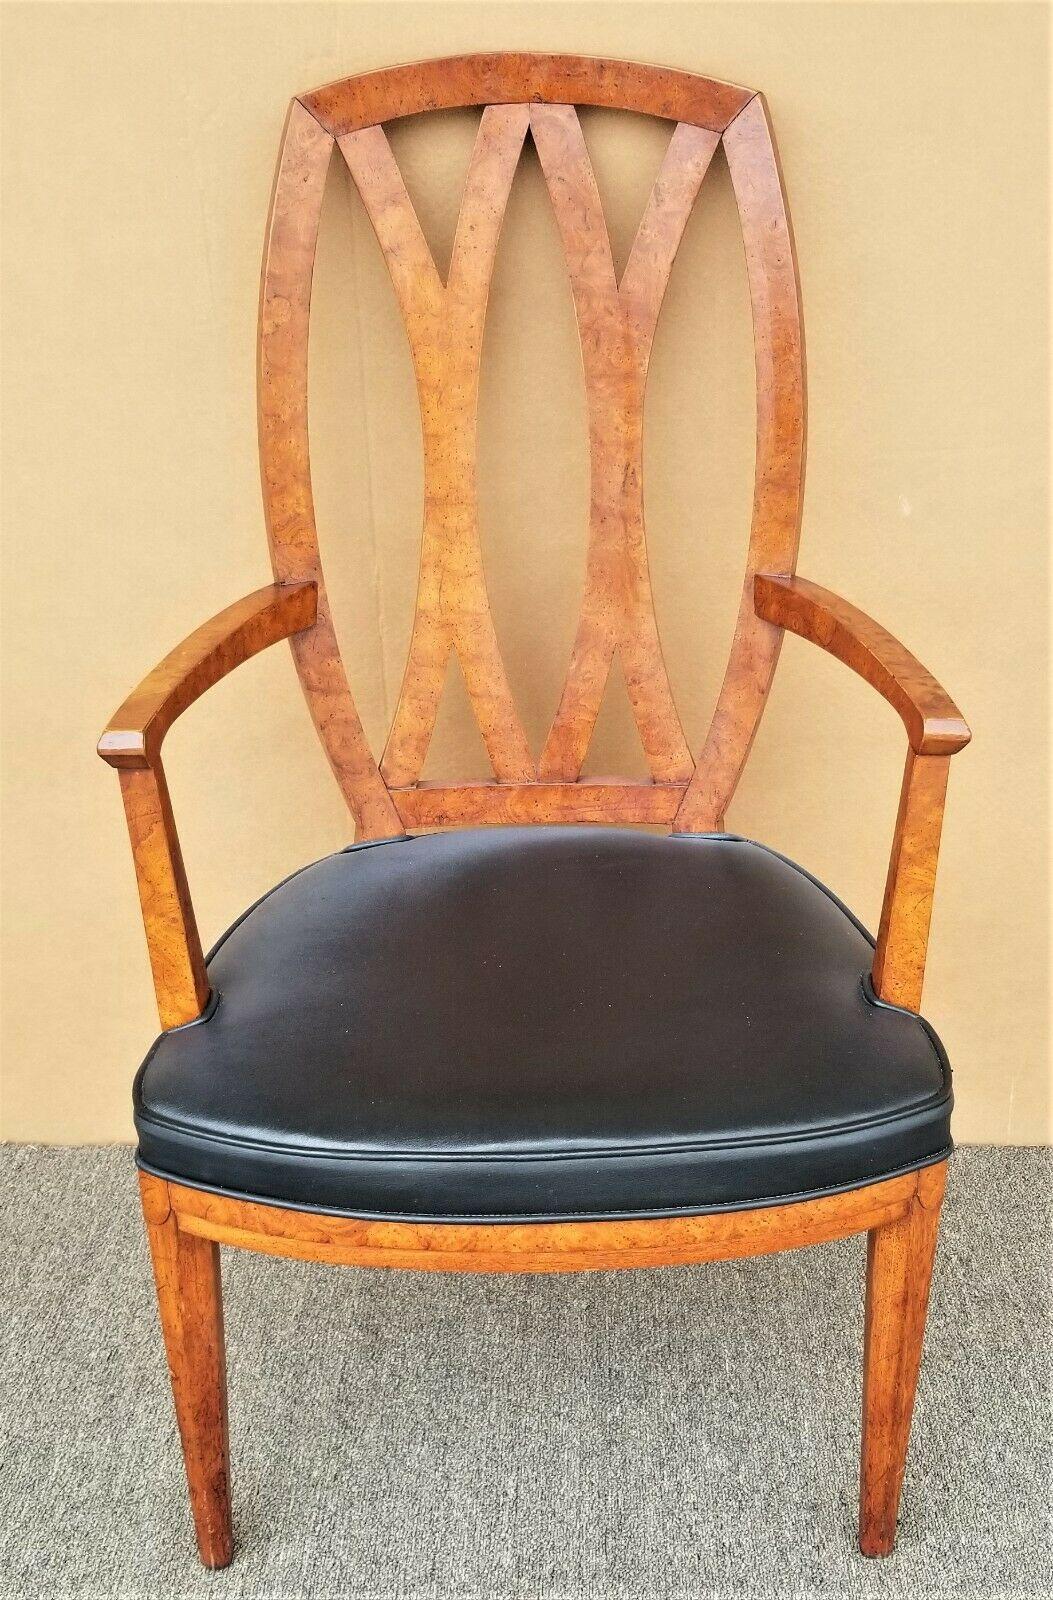 Offrant l'une de nos récentes acquisitions de meubles fins Palm Beach Estate de A 
Vintage Henredon Burl Wood Pretzel Back Armchair Dining Desk Chair (anglais seulement)

Mesures approximatives en pouces
40.75